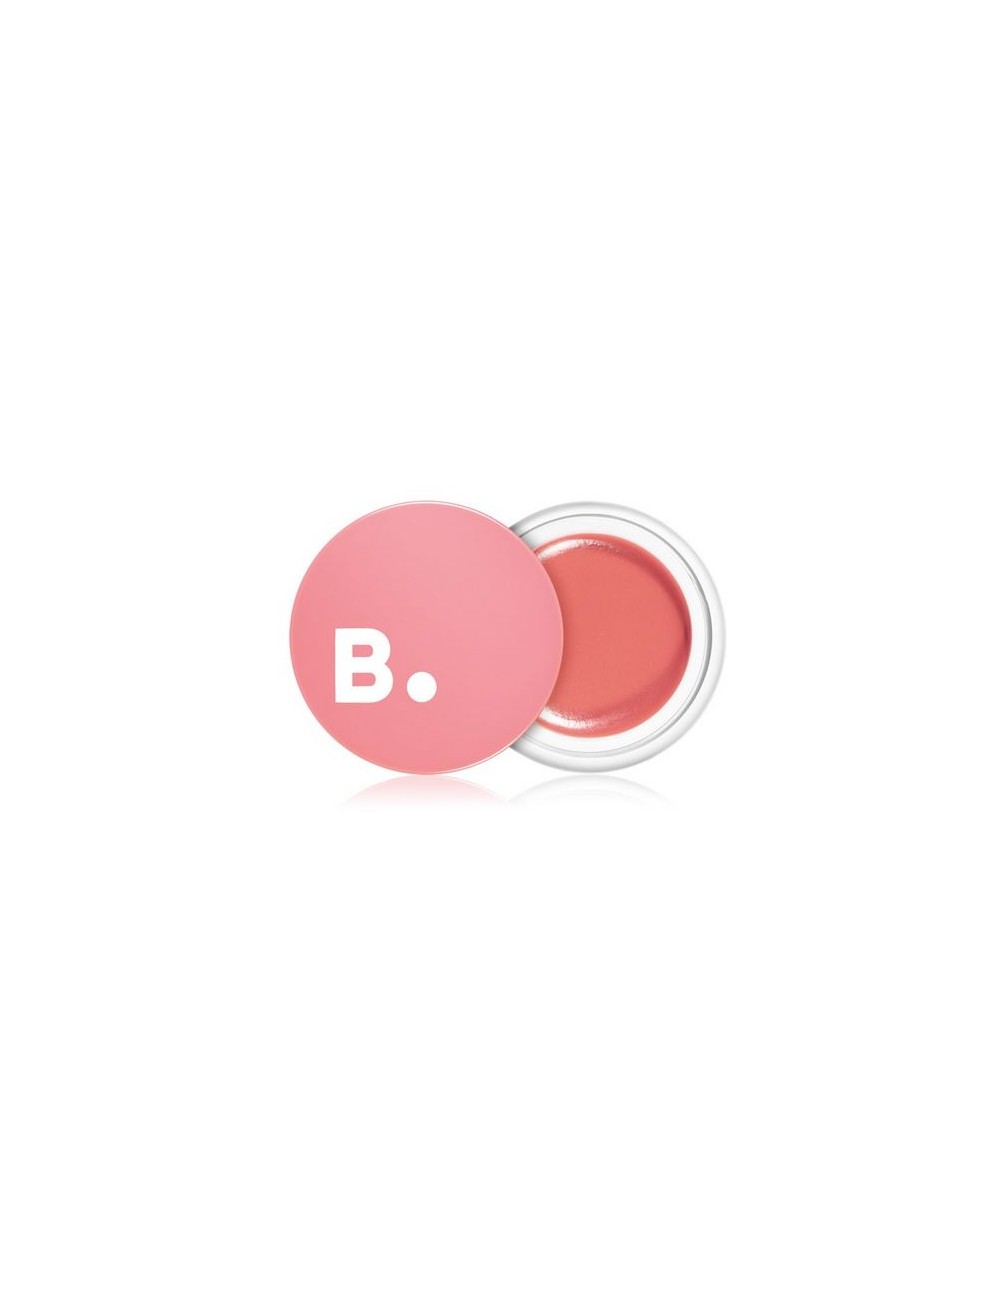 Emulsiones y Cremas al mejor precio: Banila Co B.Lip Balm 02 Baby Balm Bálsamo Labial de Banila Co. en Skin Thinks - 